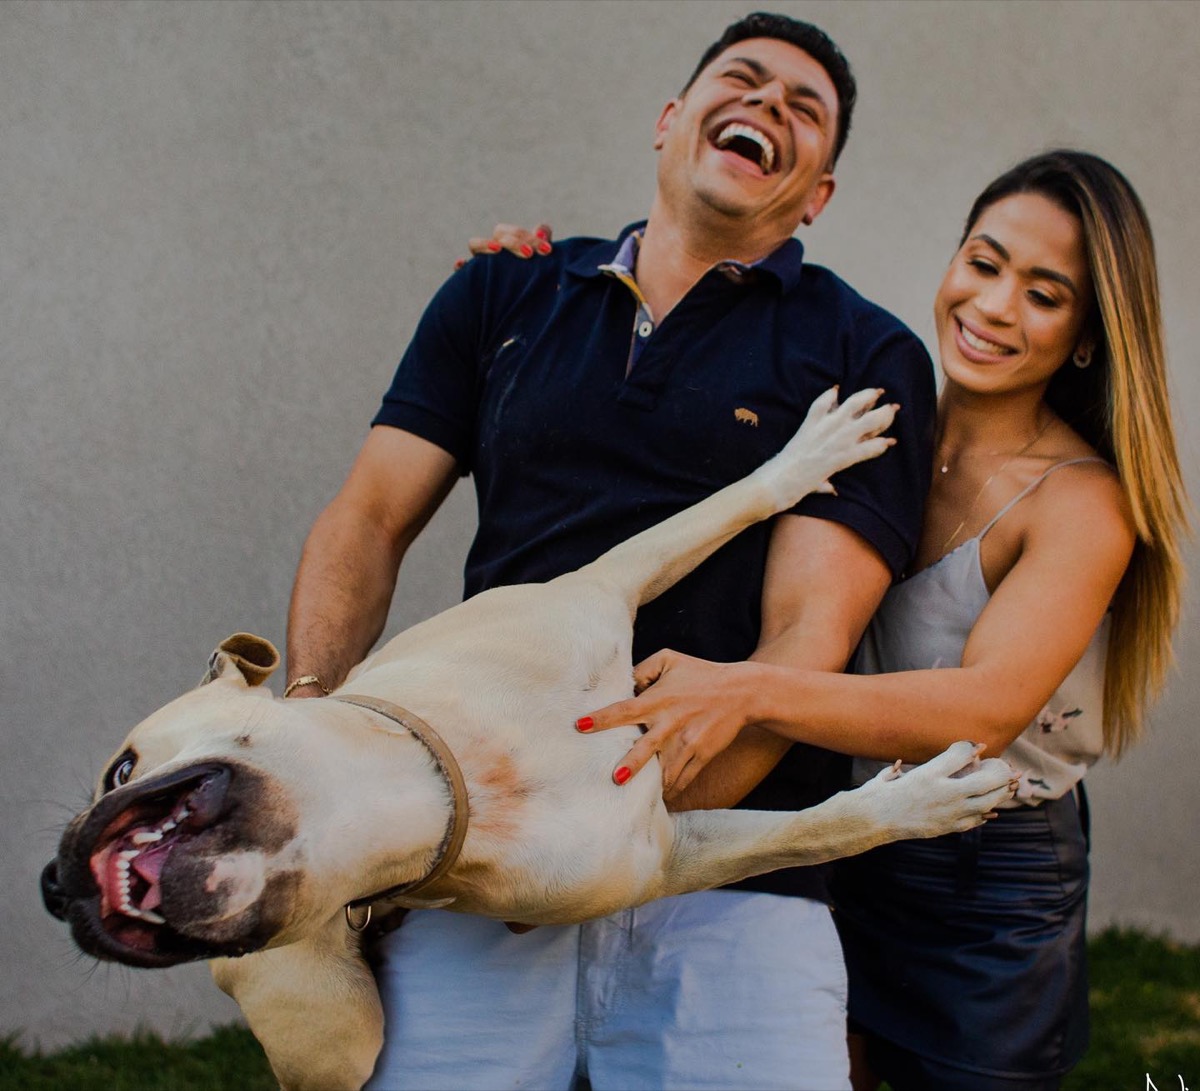 Thor dog photobombs couple's engagement shoot